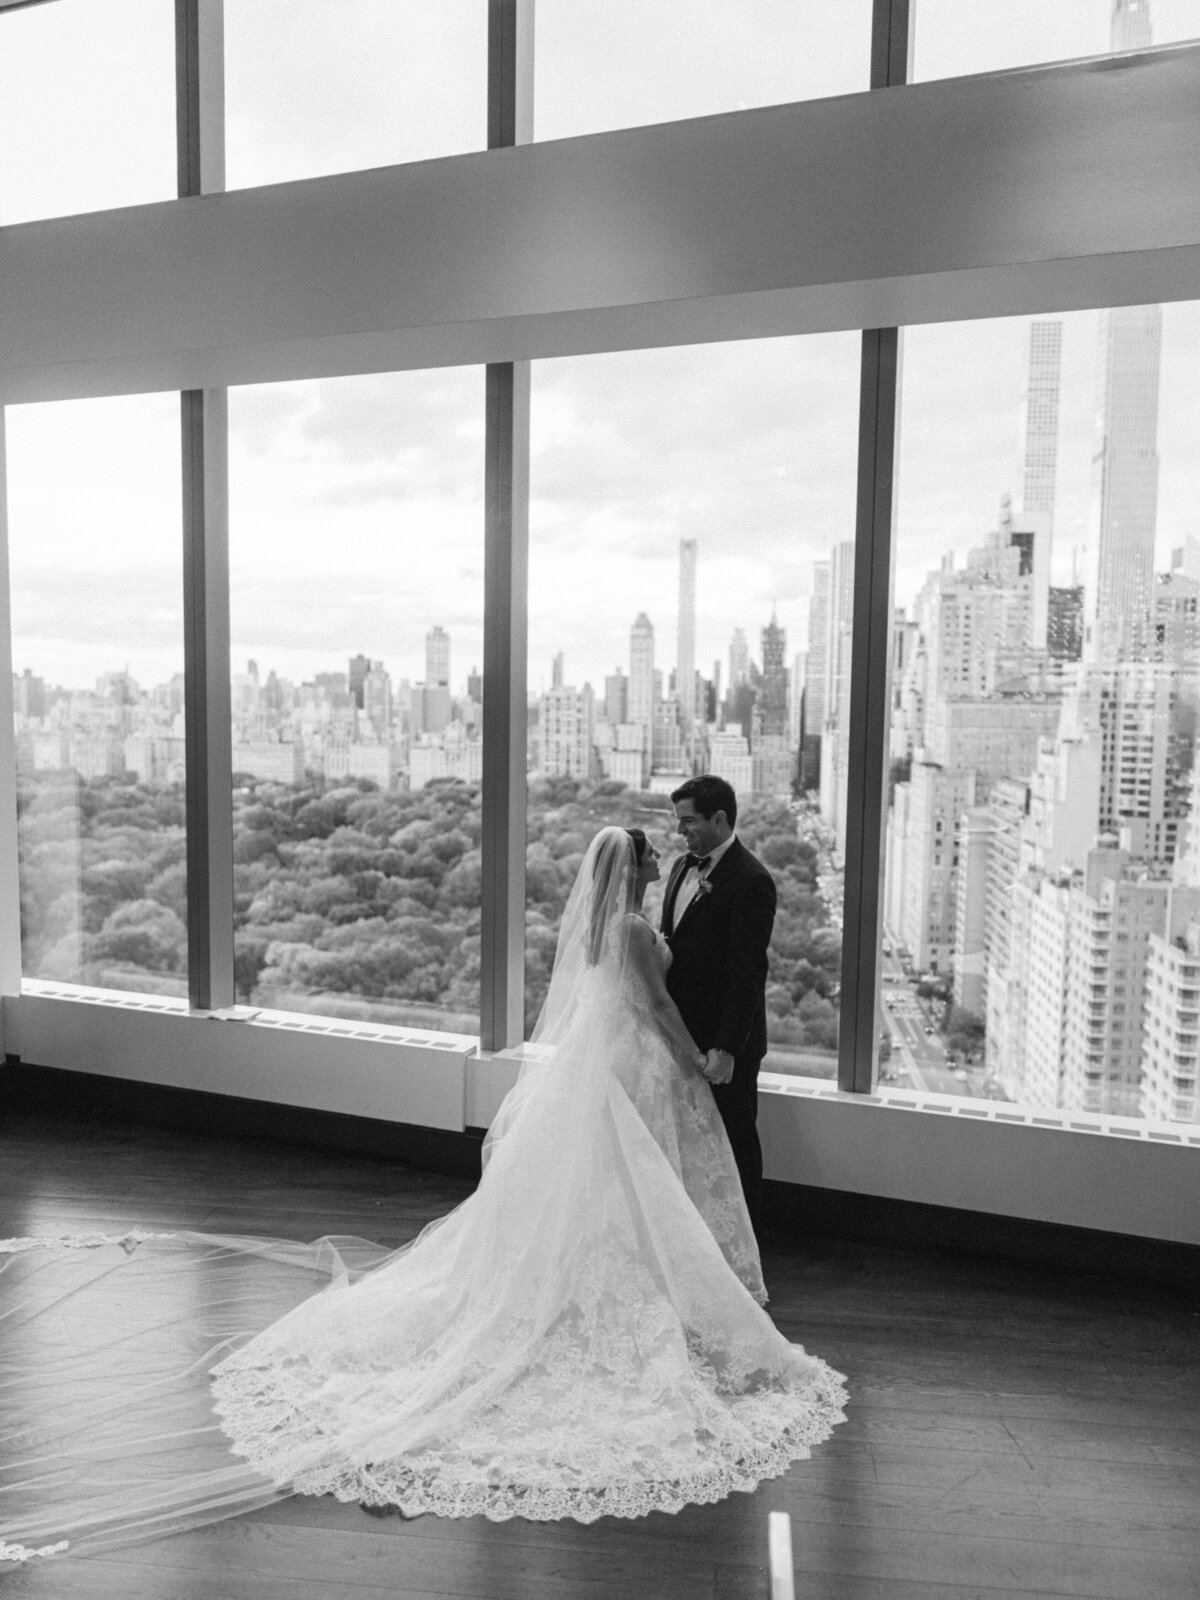 mandarinorientalwedding-newyorkwedding-nycwedding-luxurywedding-felixfeyginphotography-027